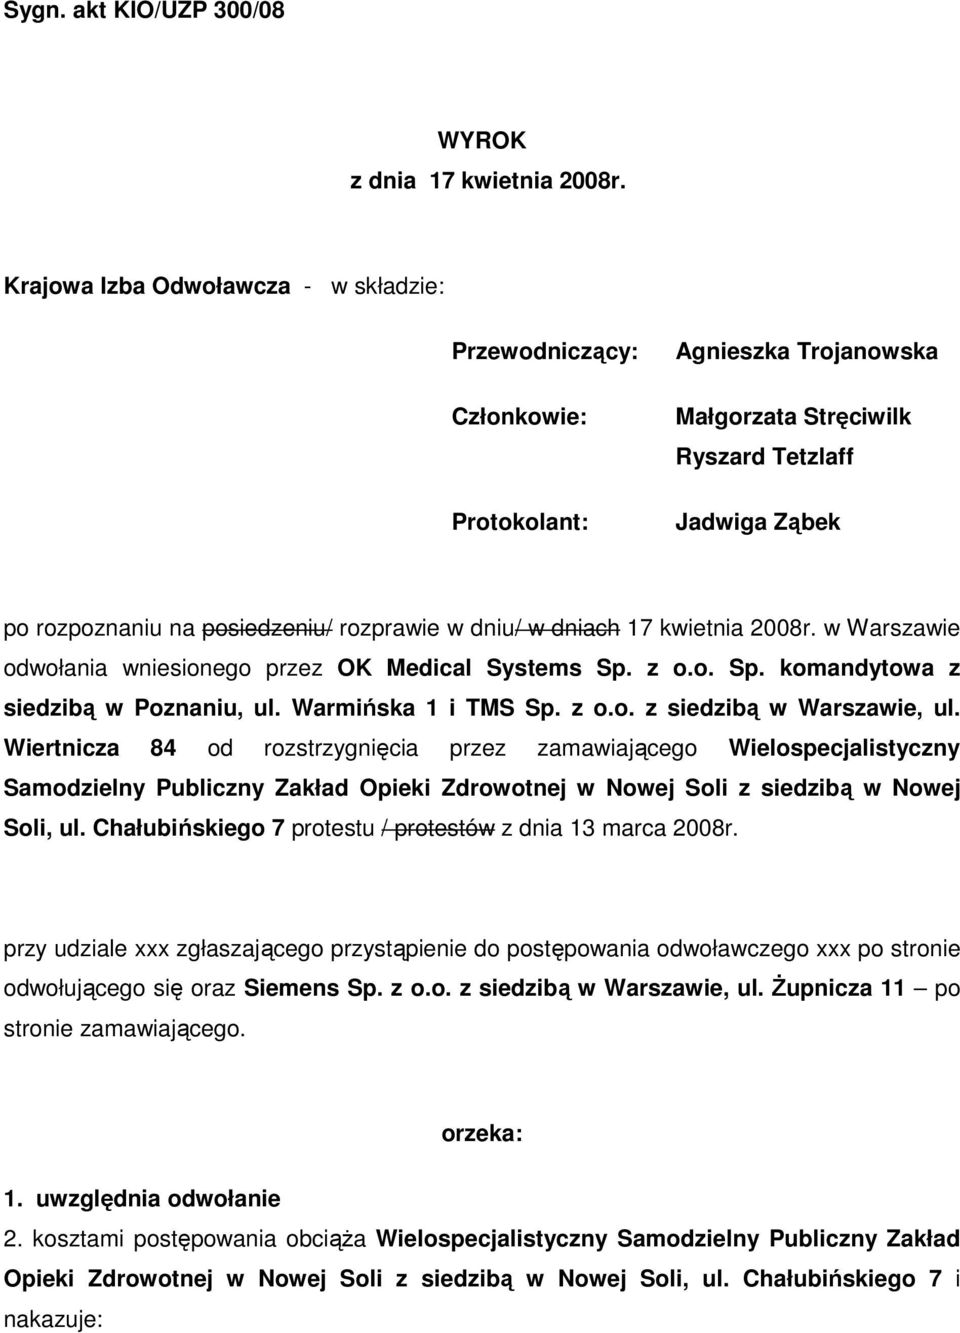 dniu/ w dniach 17 kwietnia 2008r. w Warszawie odwołania wniesionego przez OK Medical Systems Sp. z o.o. Sp. komandytowa z siedzibą w Poznaniu, ul. Warmińska 1 i TMS Sp. z o.o. z siedzibą w Warszawie, ul.